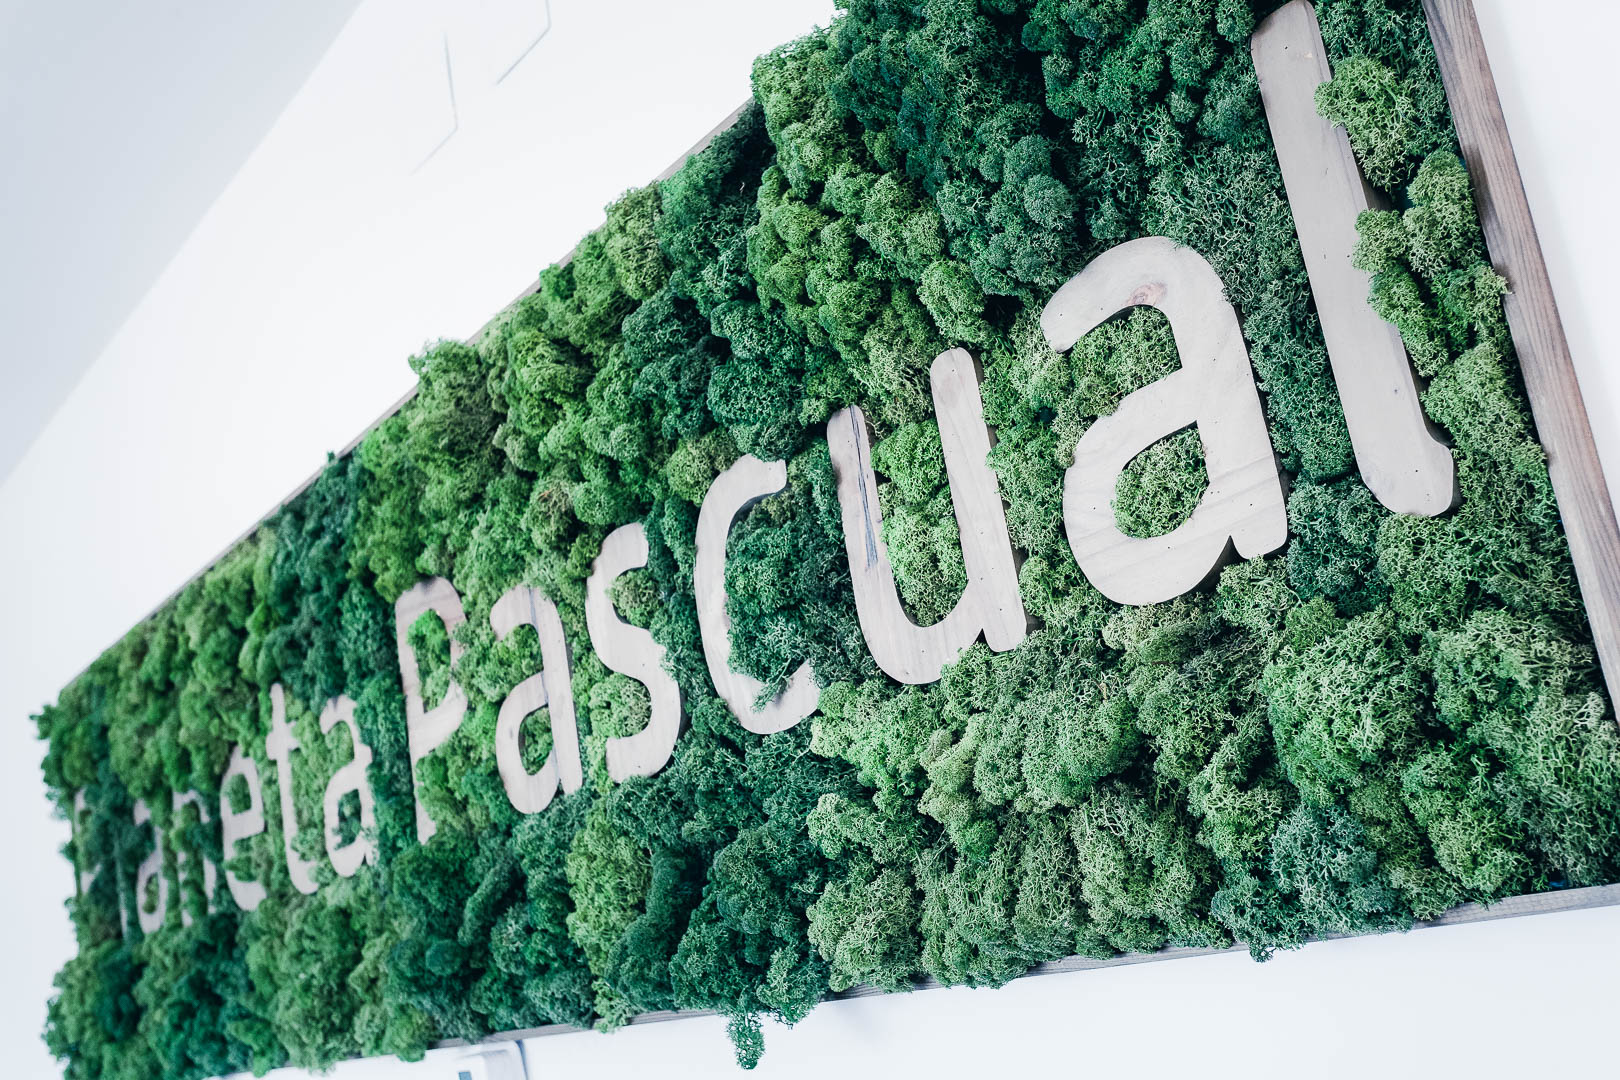 Pascual sigue siendo líder en el sector lácteo / Pascual 